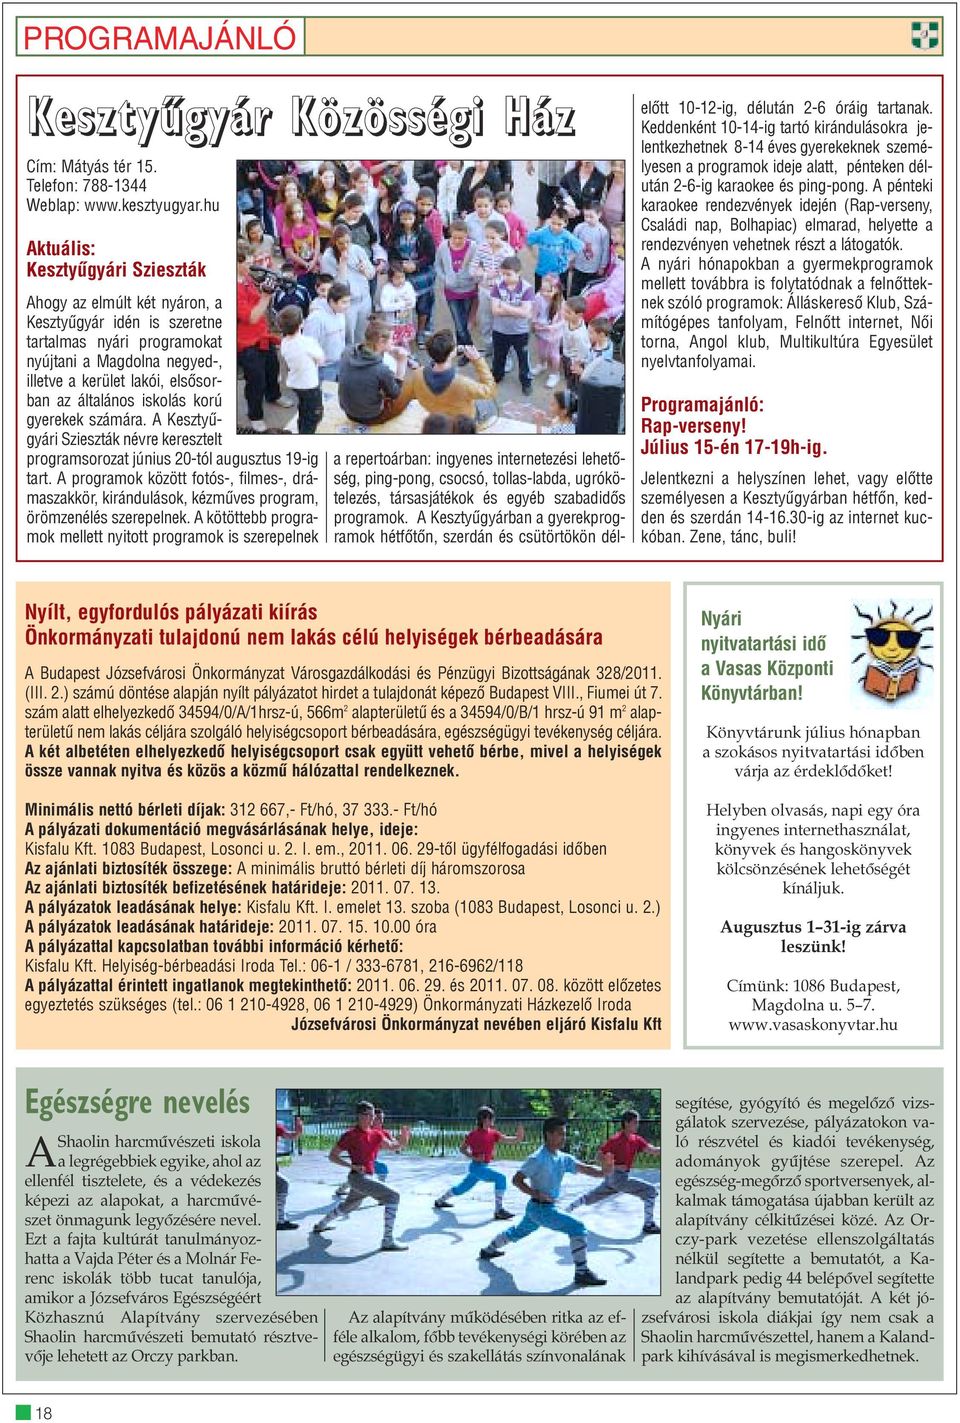 általános iskolás korú gyerekek számára. A Kesztyûgyári Szieszták névre keresztelt programsorozat június 20-tól augusztus 19-ig tart.